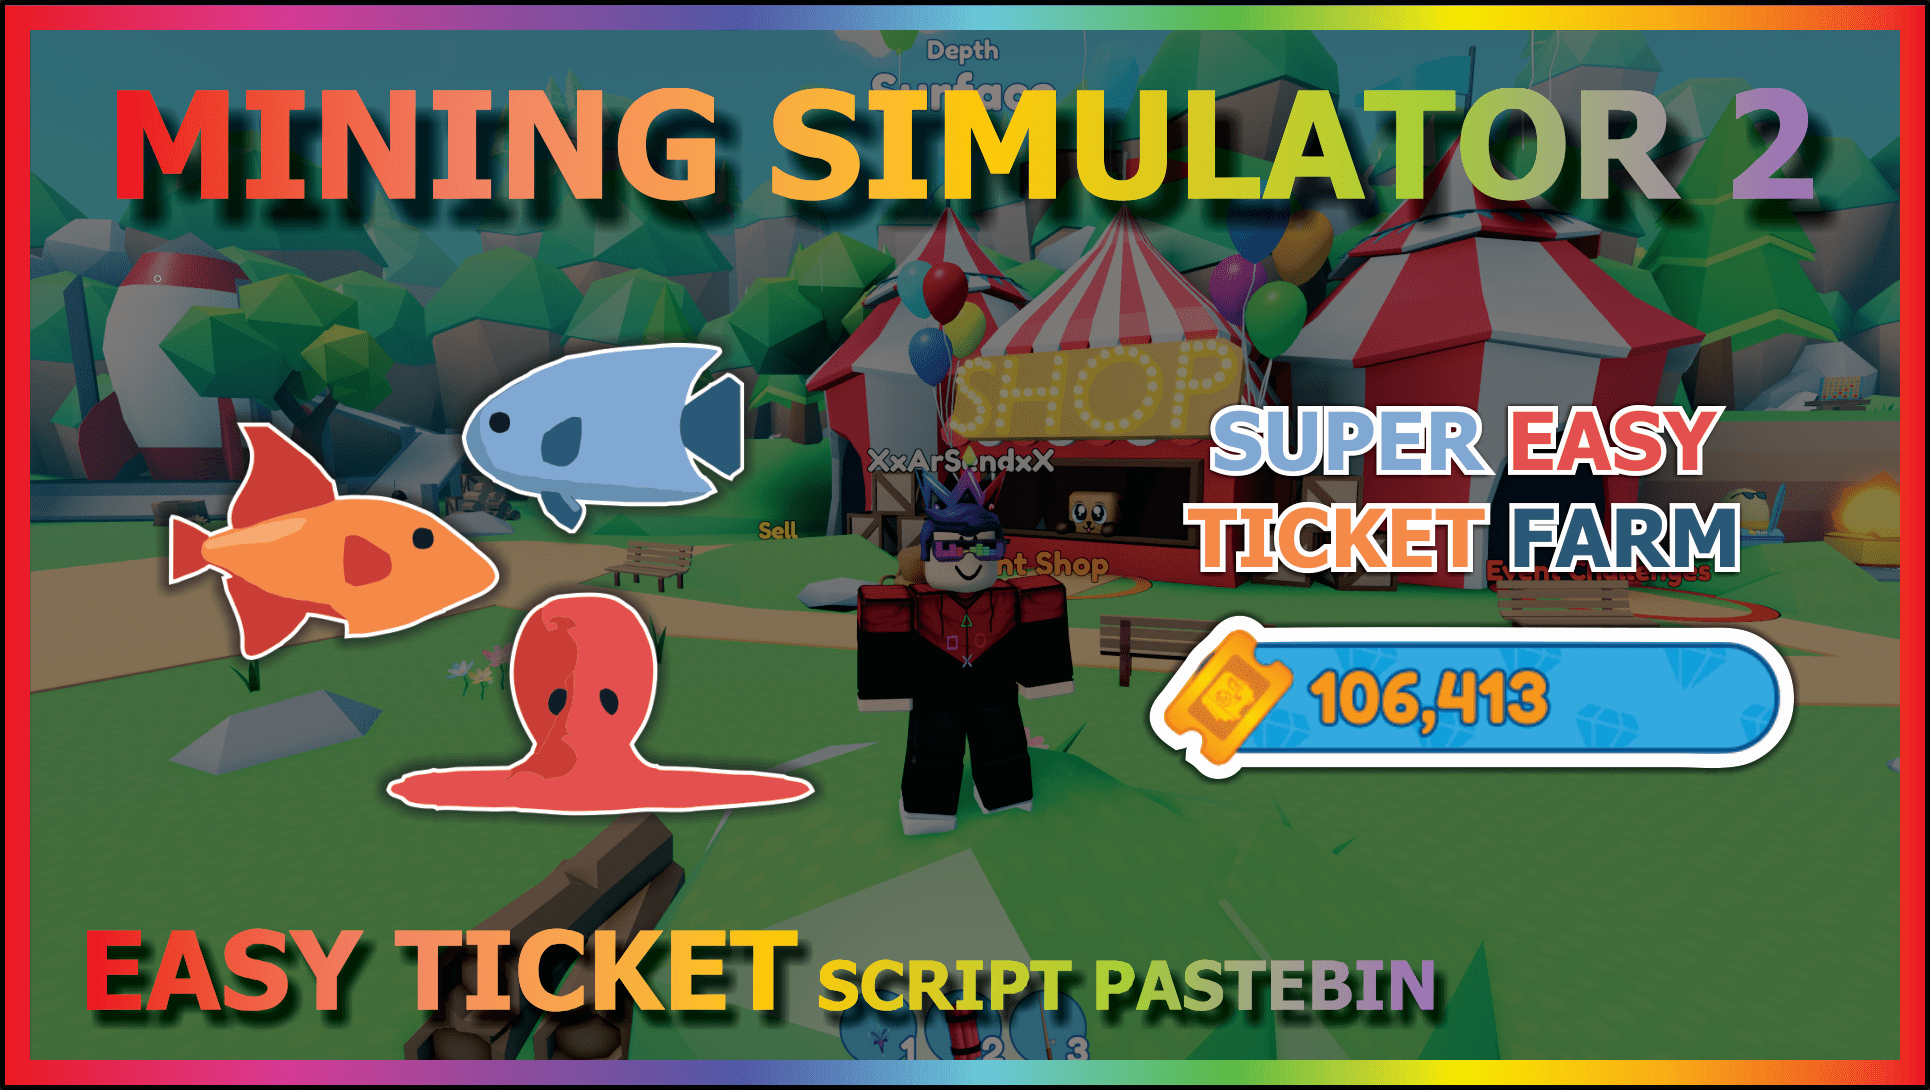 2023 Pastebin) The *BEST* Mine Blocks Simulator Script! Wins Farm, Auto  Rebirth, and more!